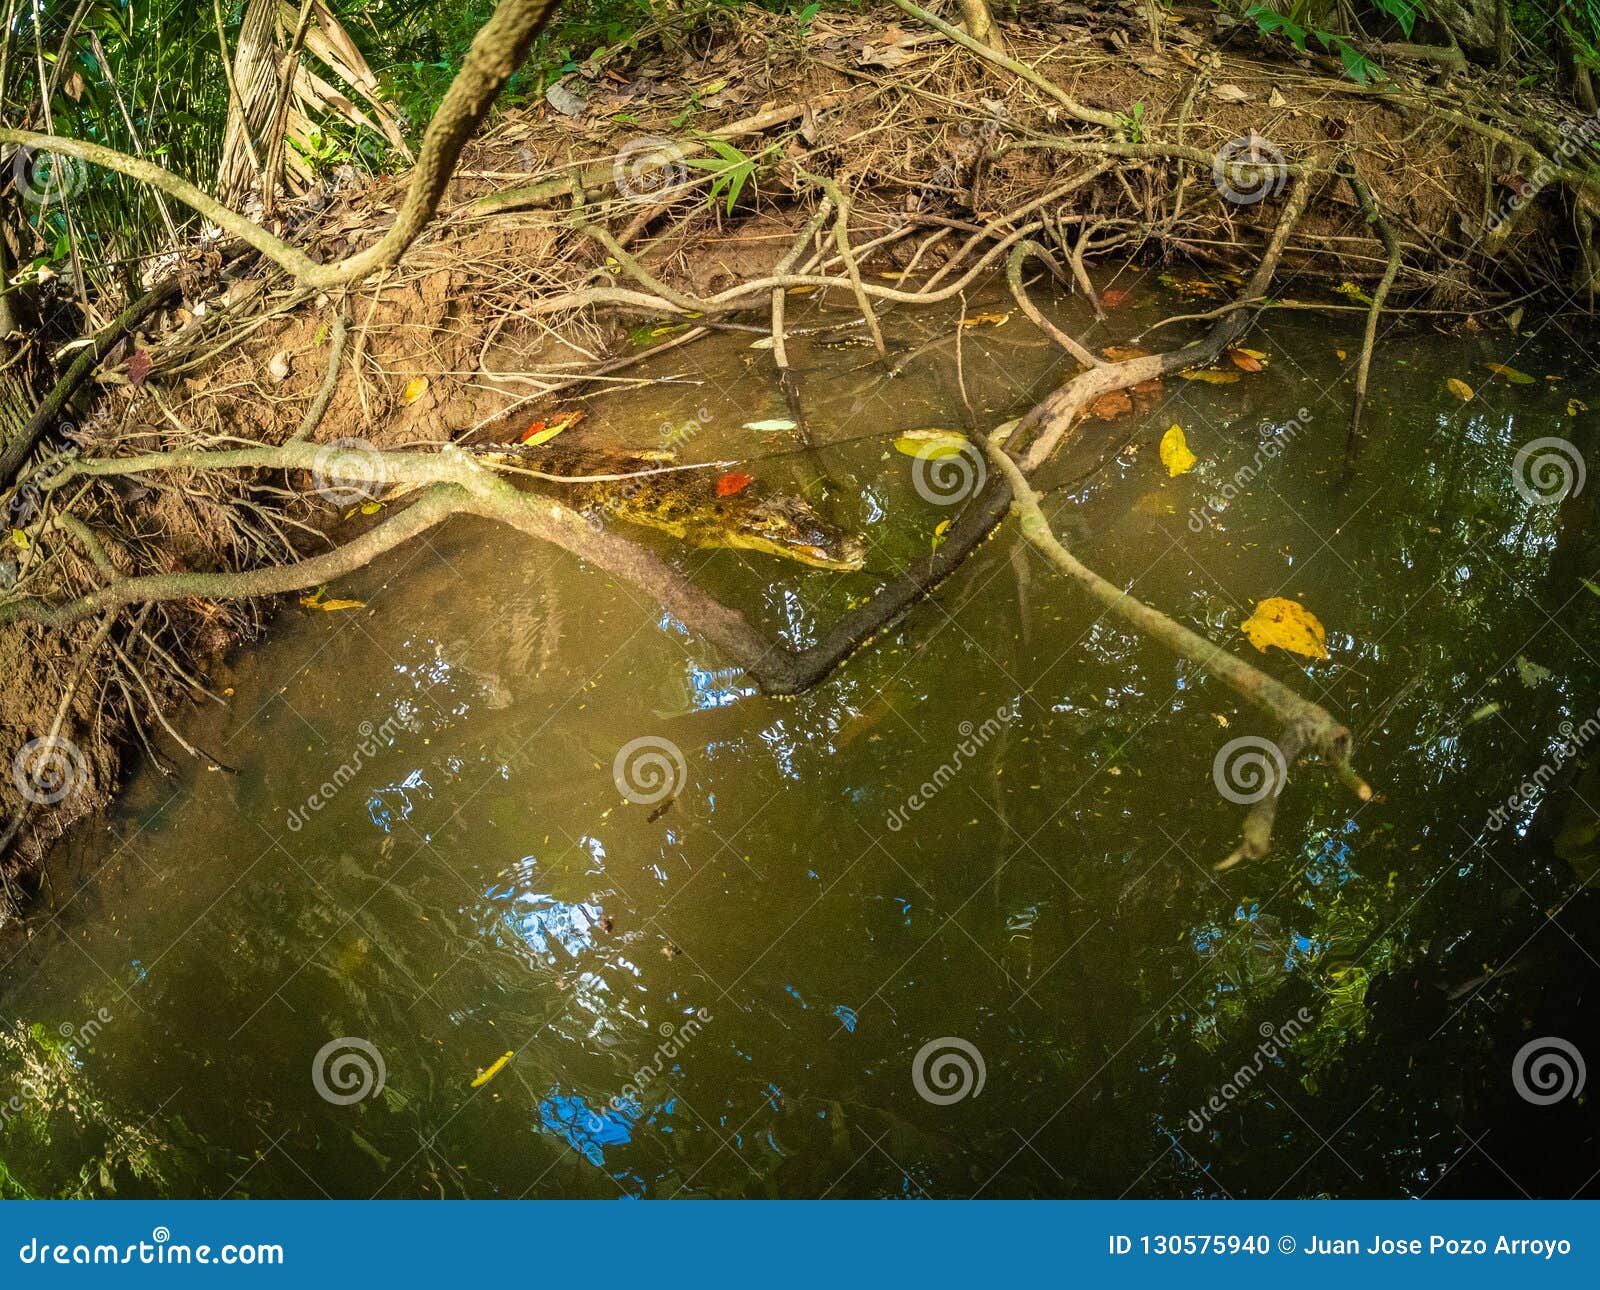 crocodile bebe hidden in marshland